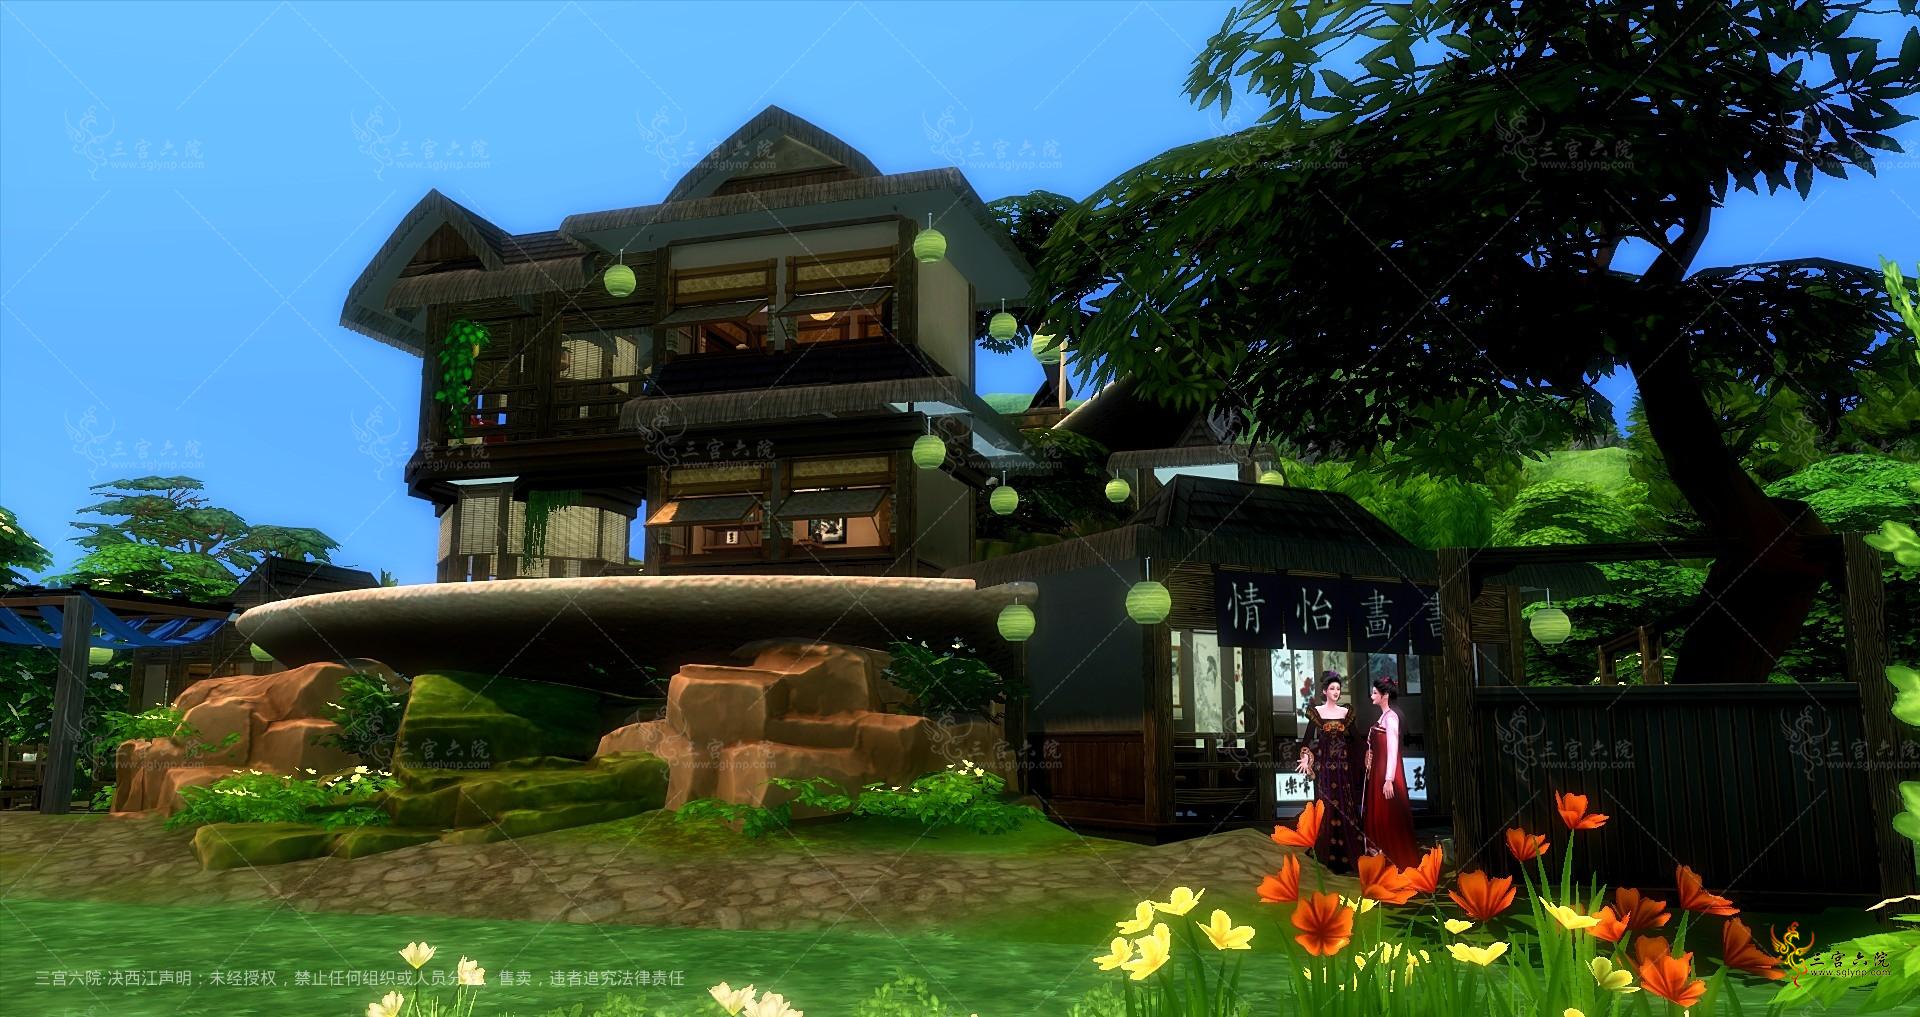 Sims 4 Screenshot 2022.07.29 - 00.07.12.98.png